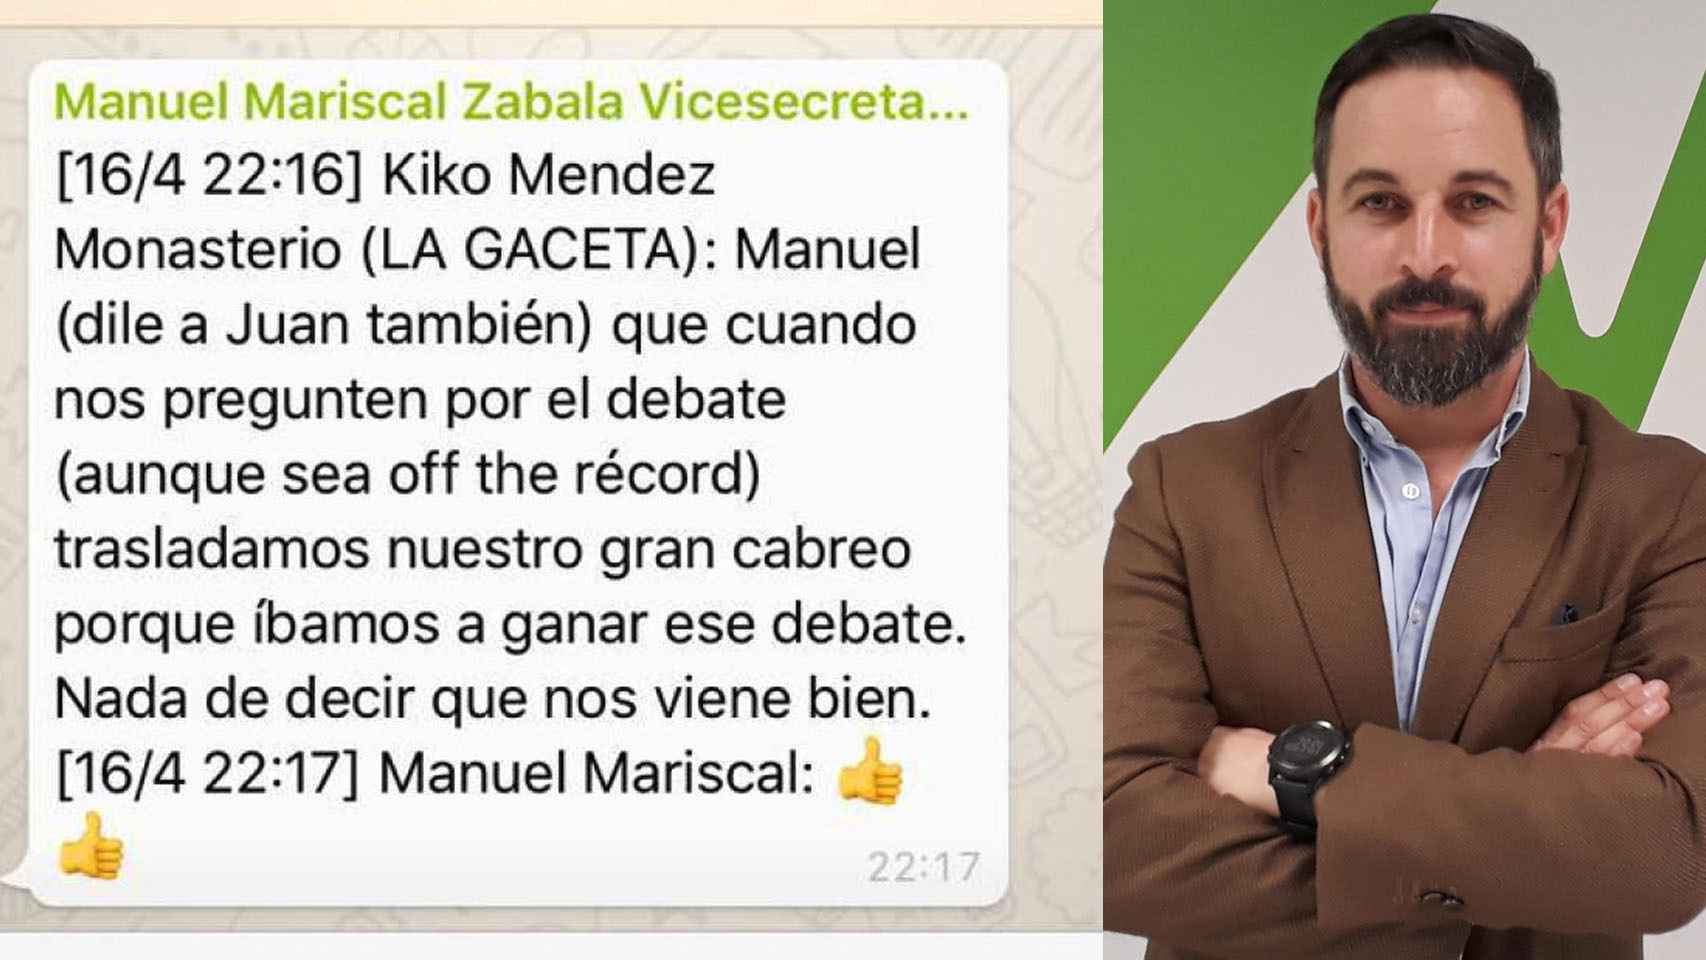 Conversación publicada por error por el vicesecretario de Comunicación de Vox, Manuel Mariscal.